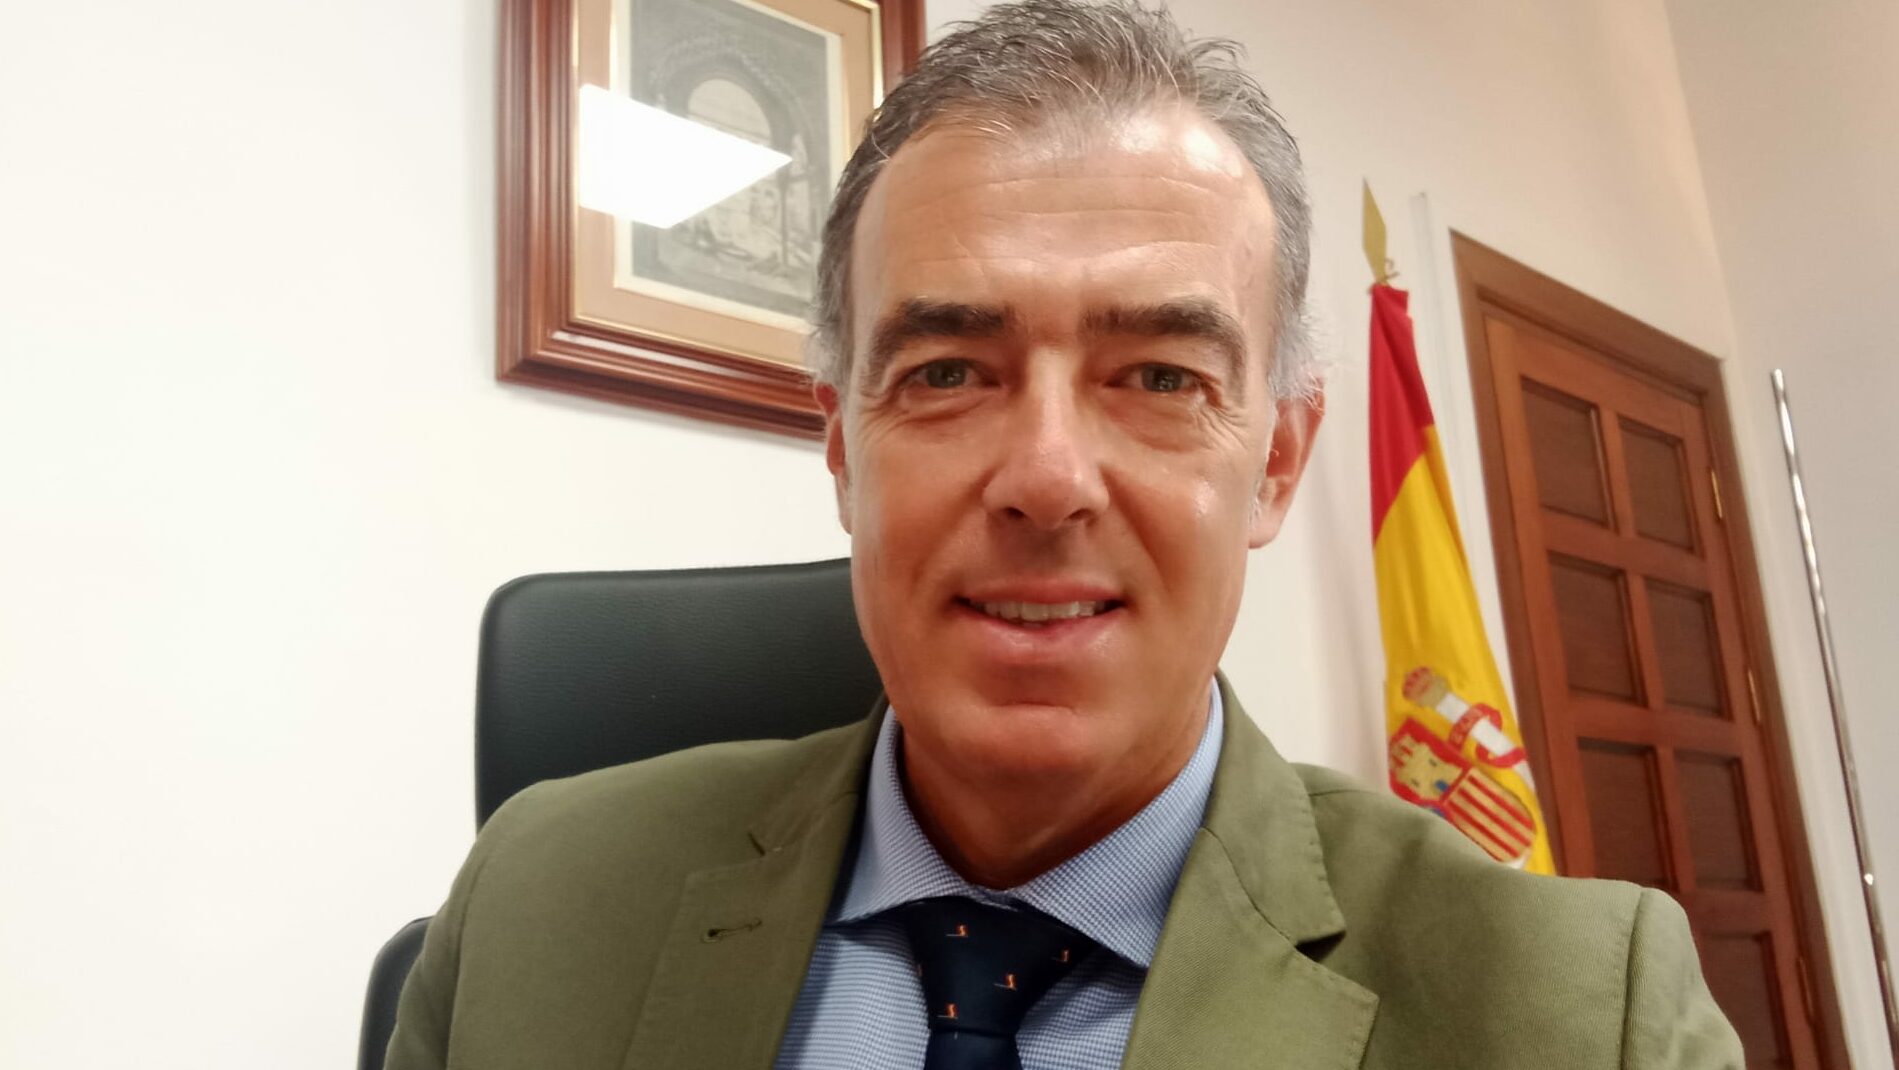 Ciudadanos 'ficha' al juez que imputó a Sean Connery para dirigir la oficina anticorrupción andaluza